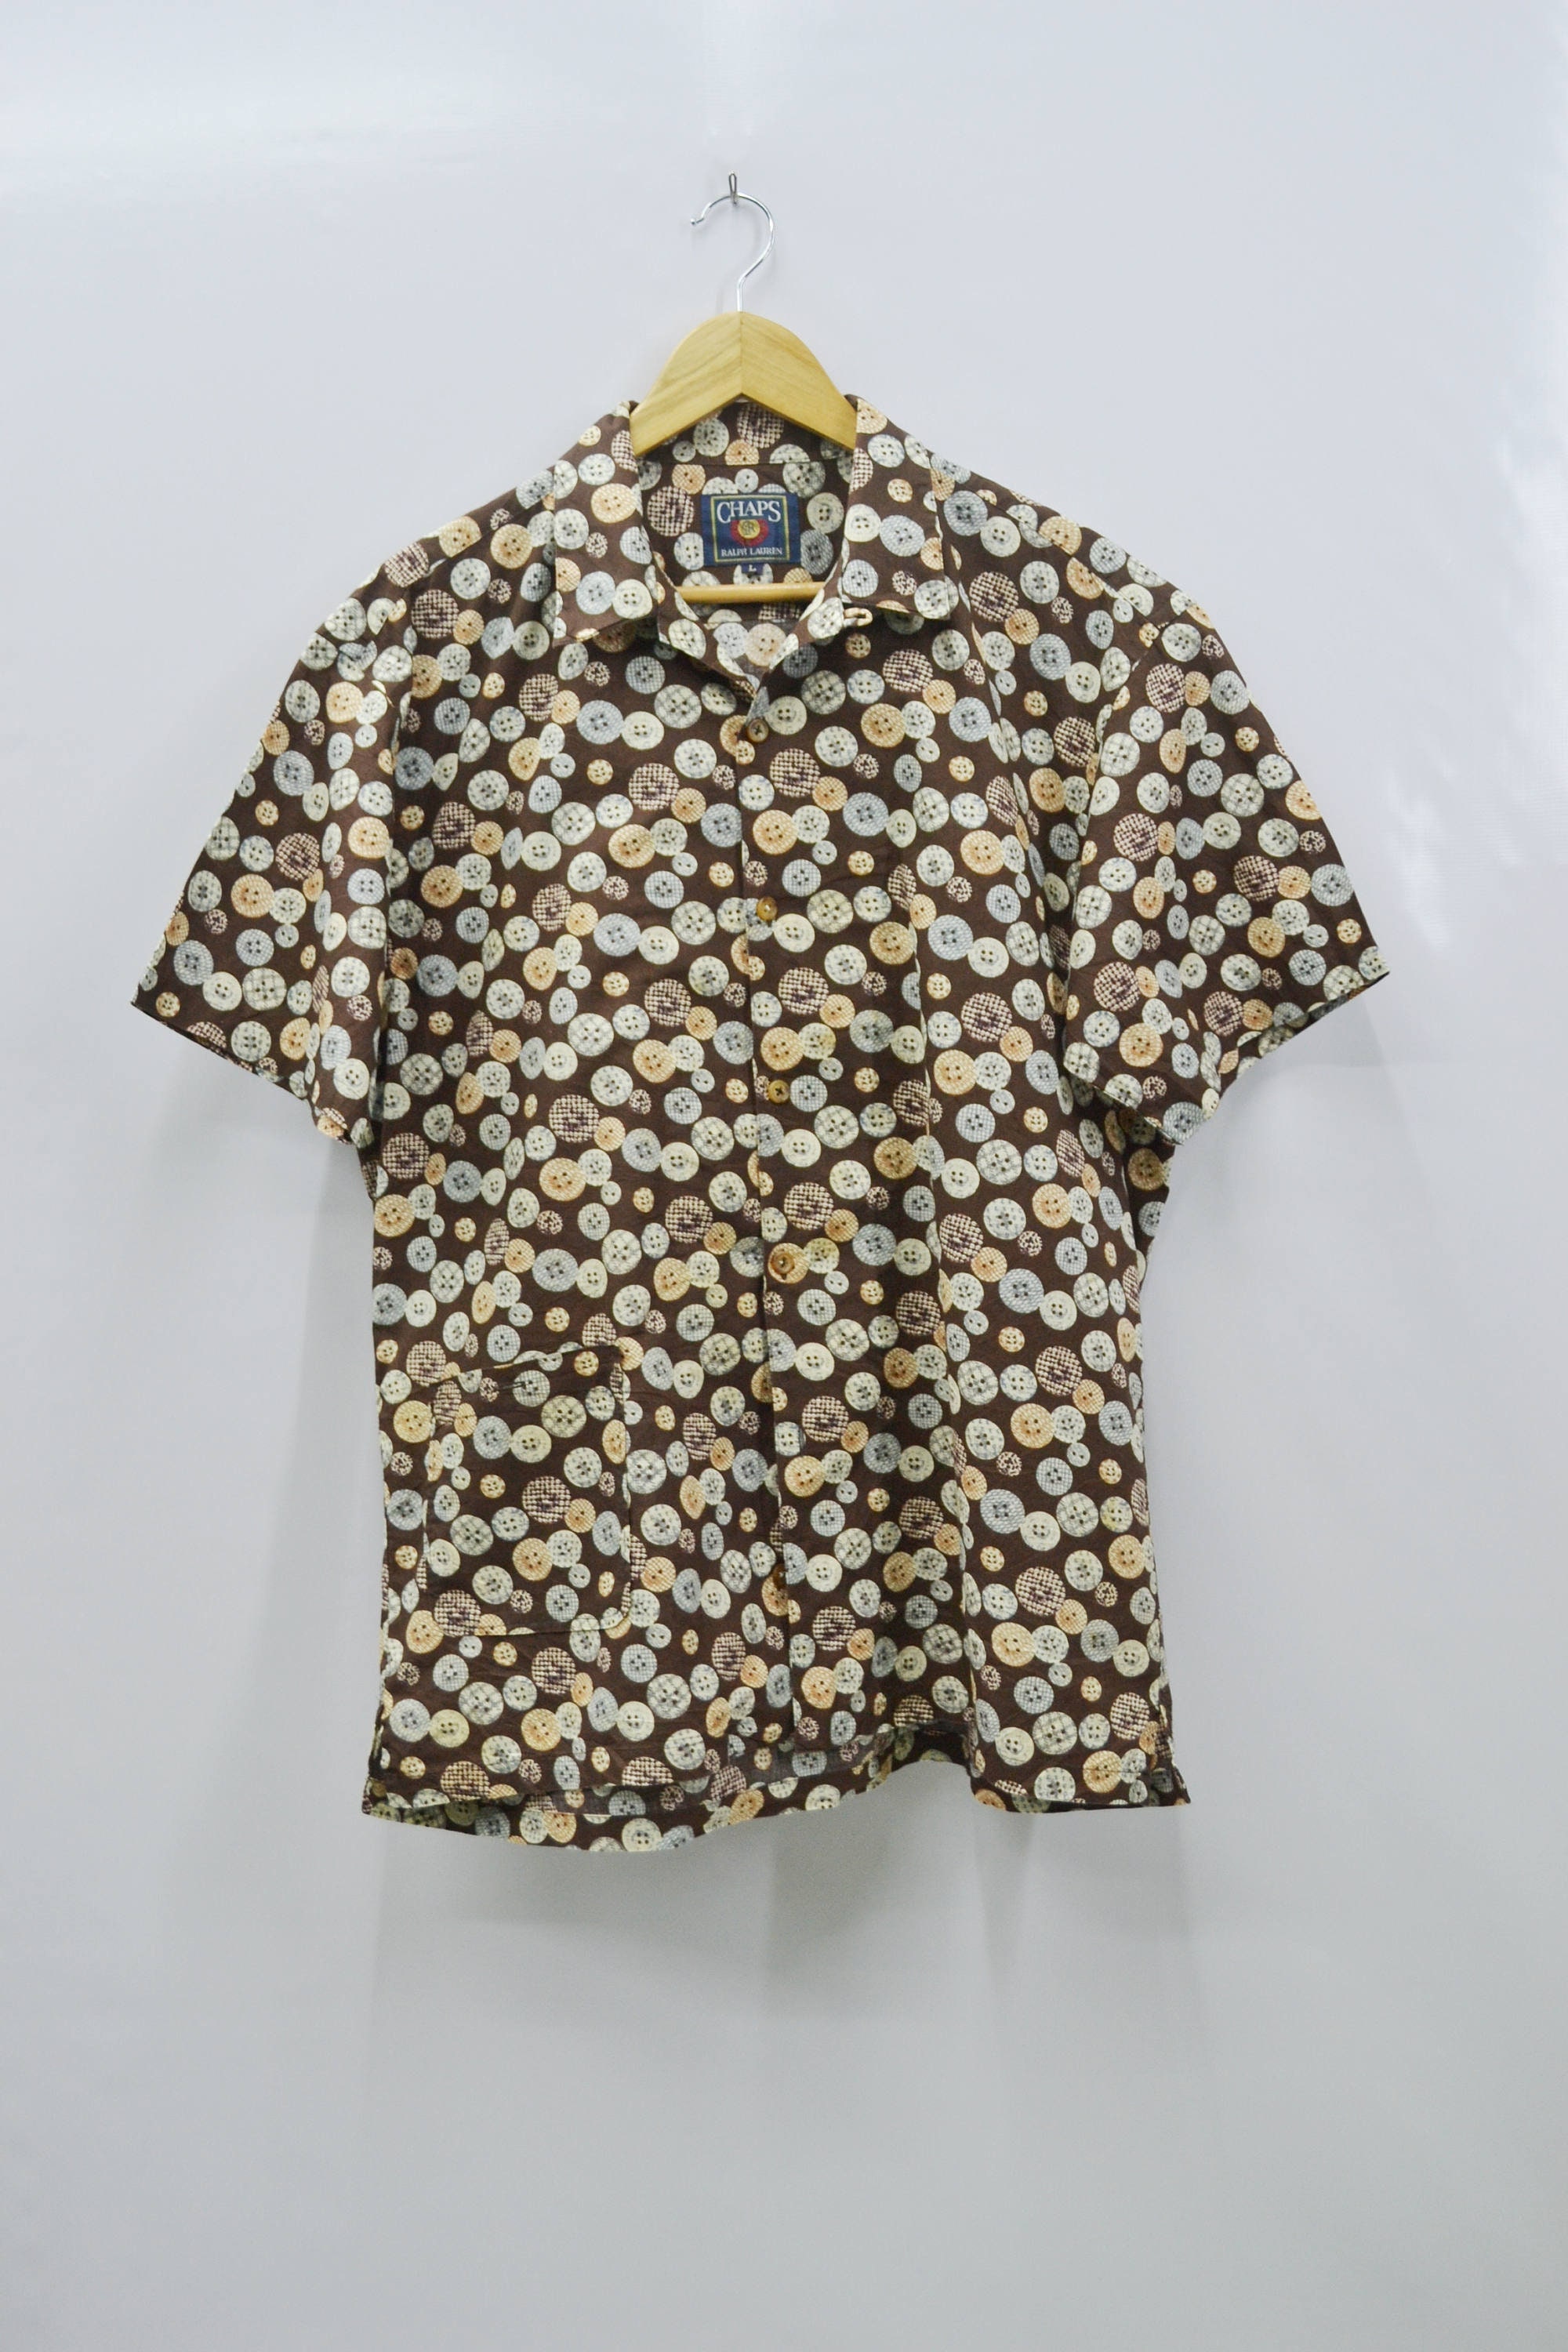 Ralph Lauren Shirt Vintage Chaps Ralph Lauren Button Shirt | Etsy